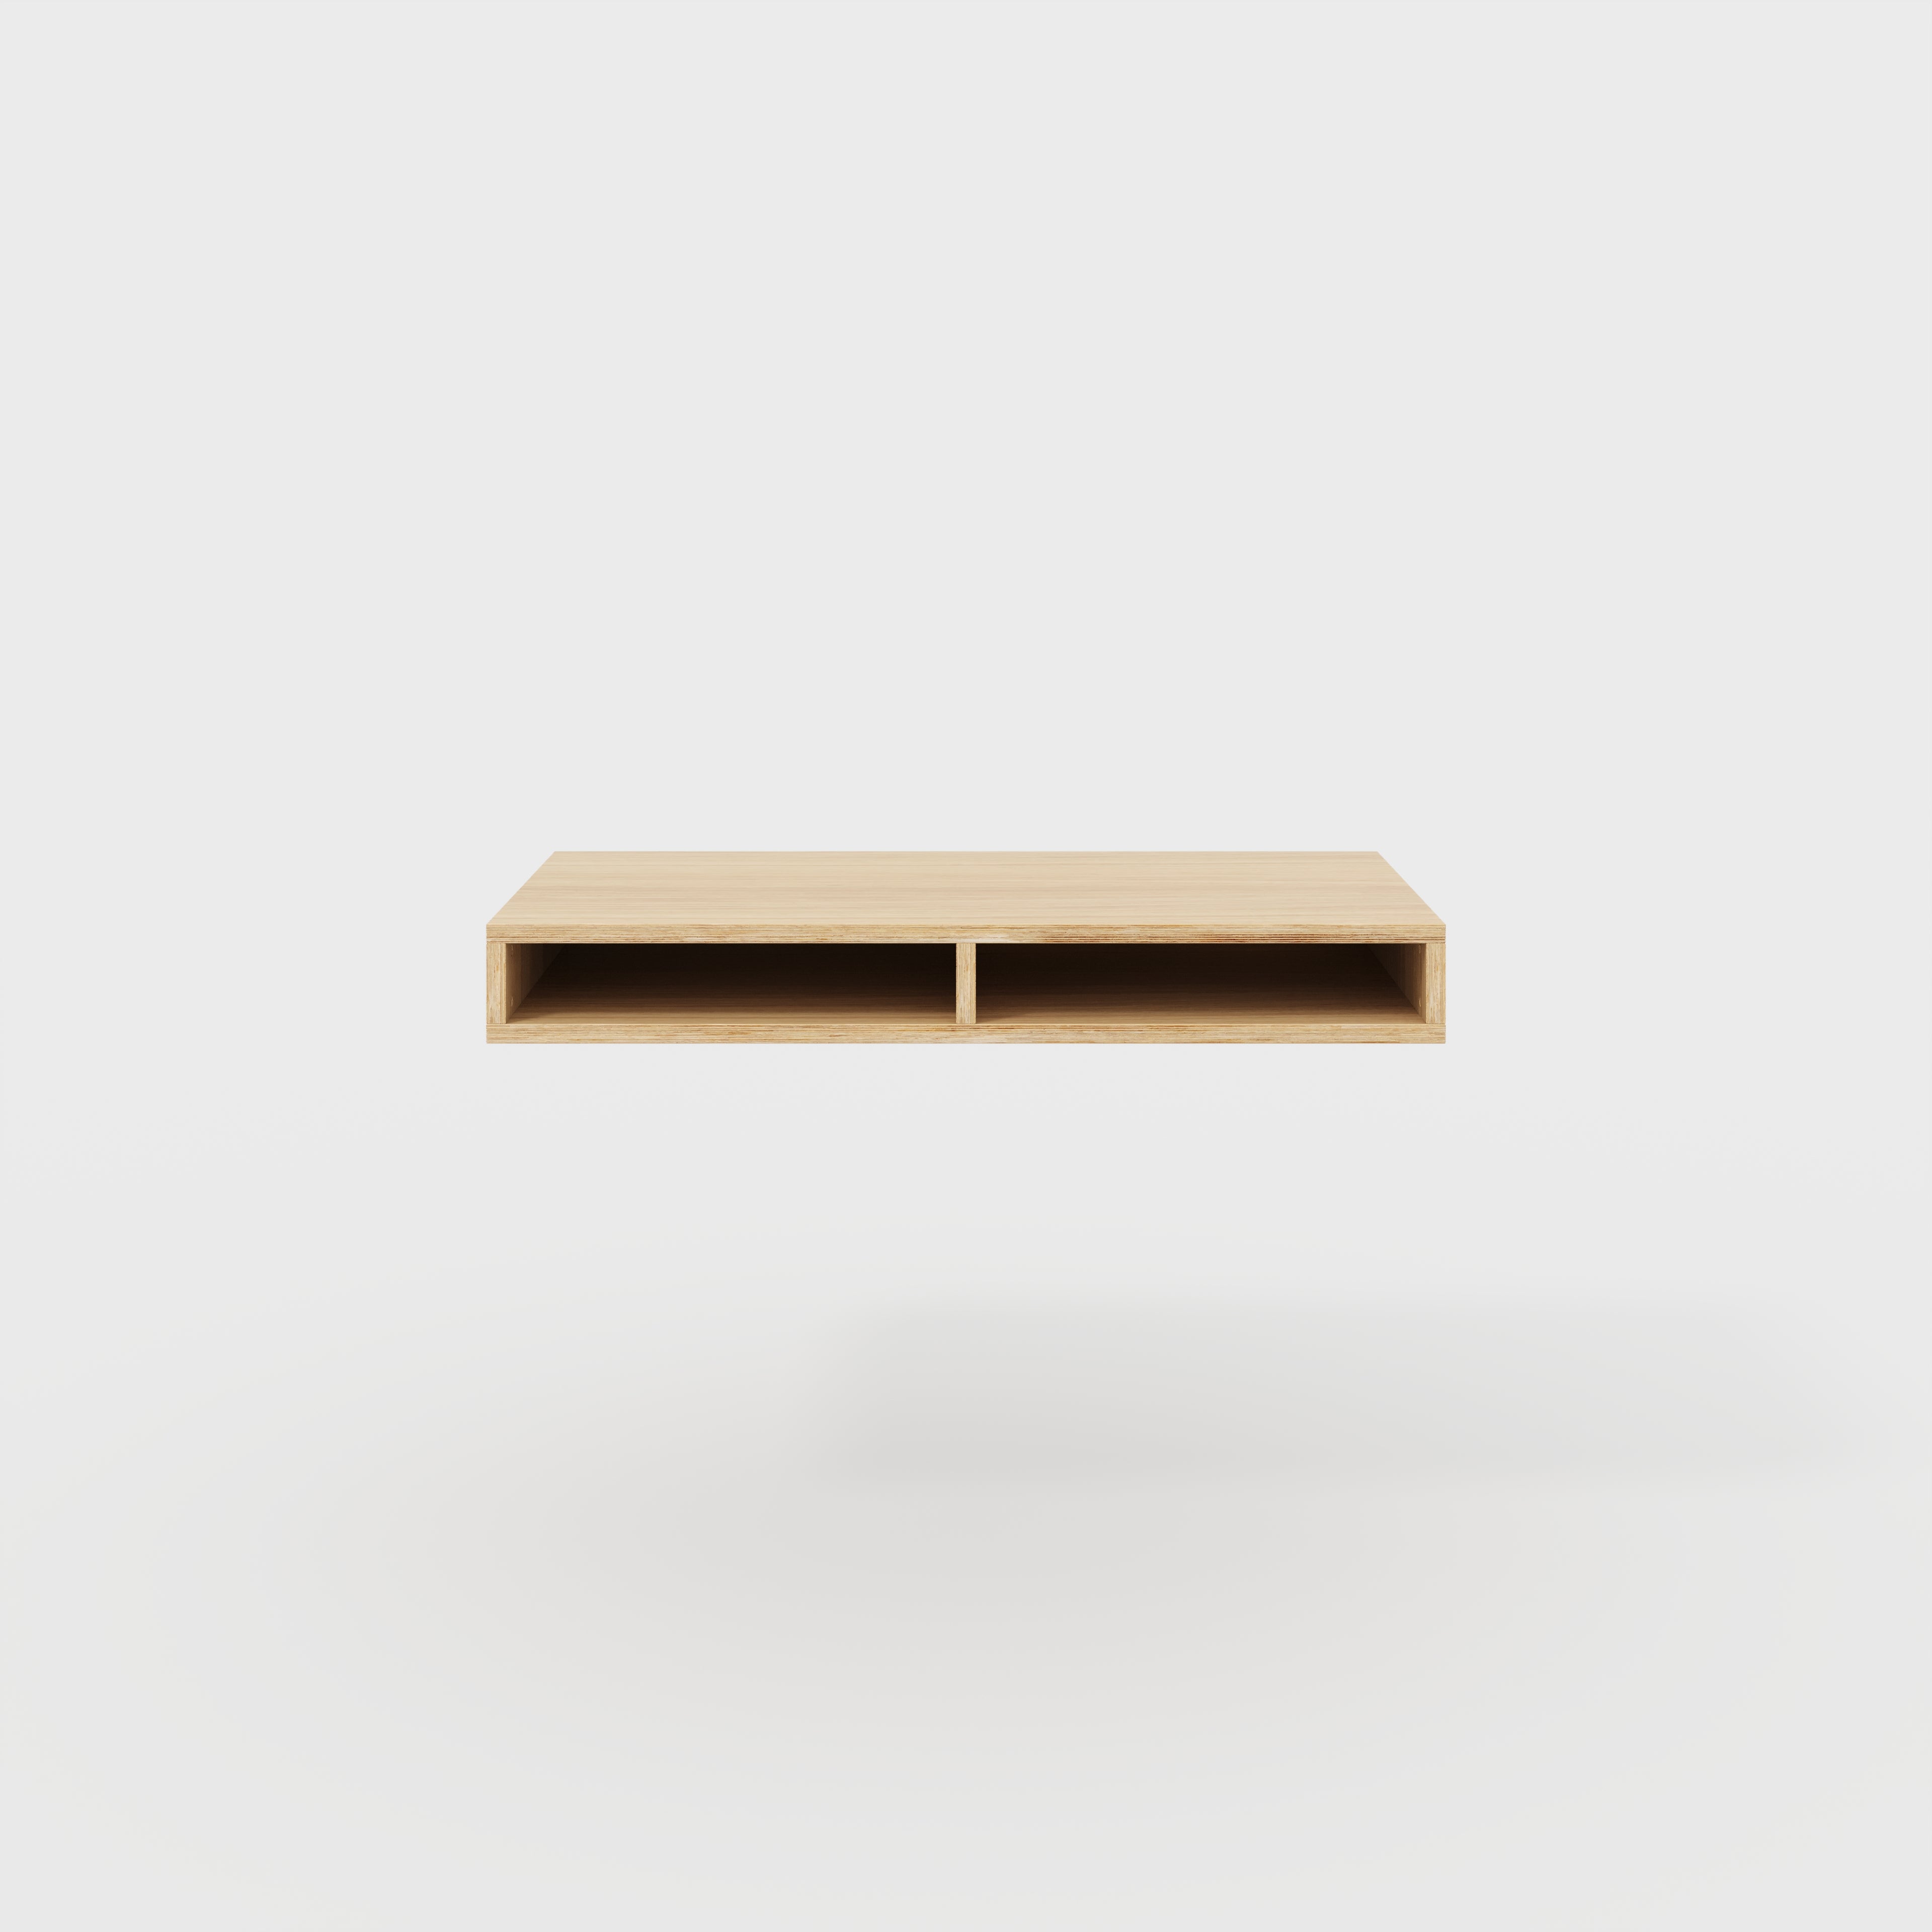 Plywood Desktop with Storage - Plywood Oak - 1200(w) x 600(d) x 150(h)